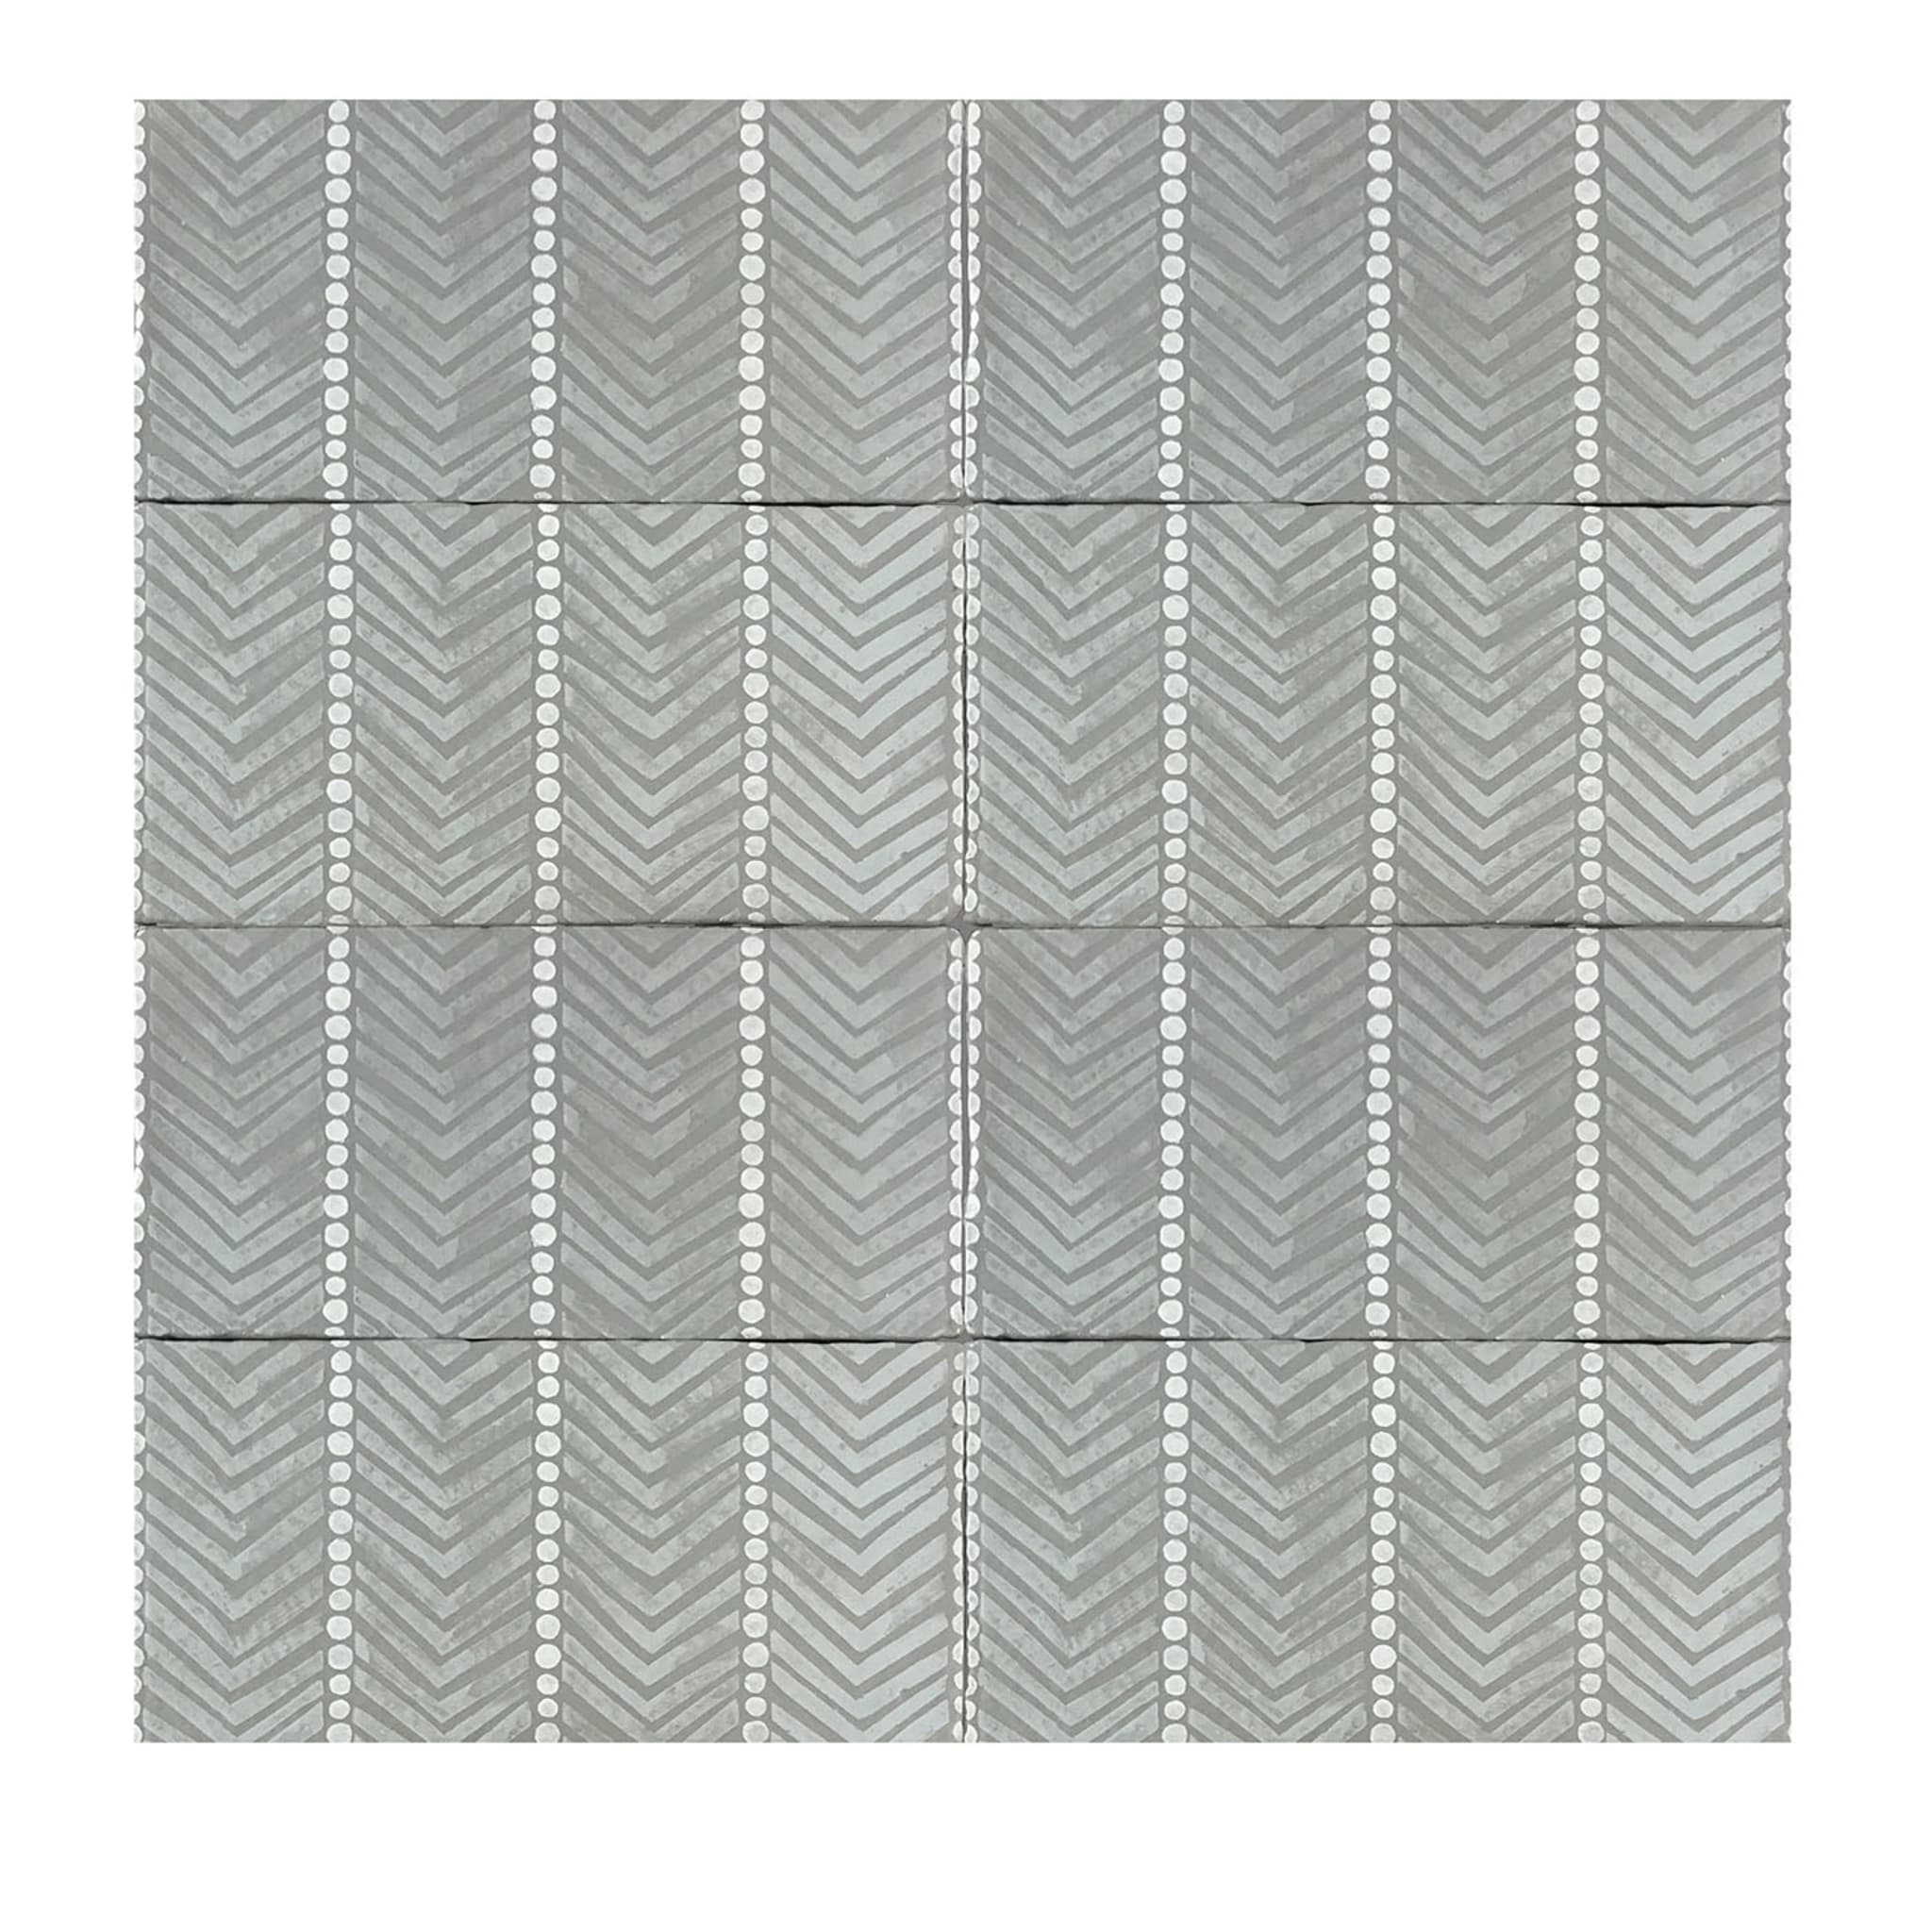 Daamè Set of 50 Rectangular Gray Tiles #2 - Main view